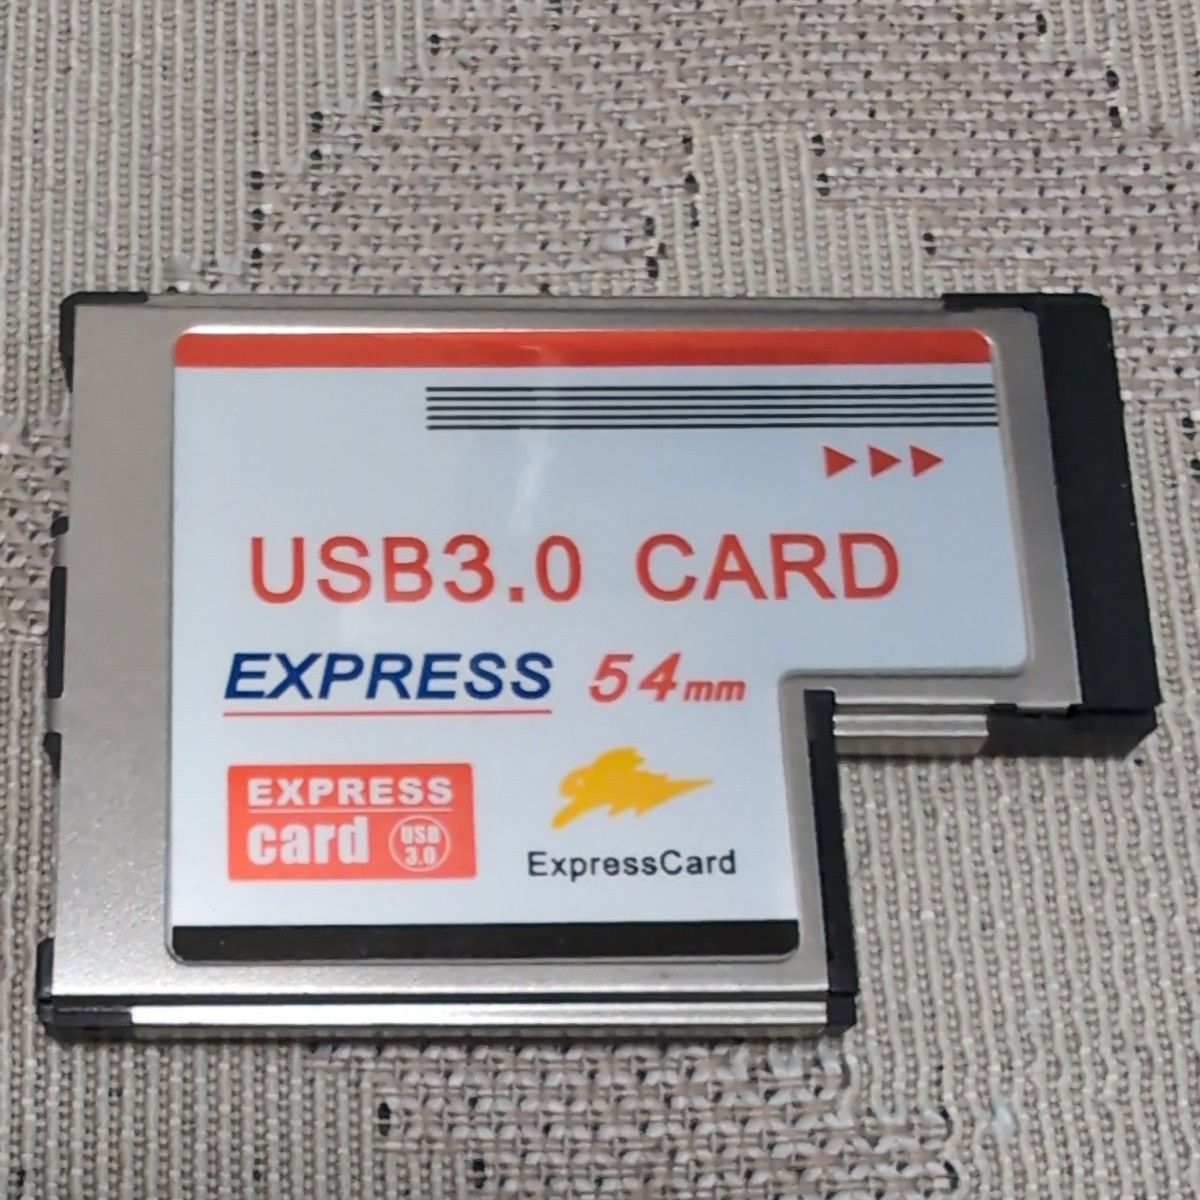 USB3.0 CARD  ExpressCard PCカード エクスプレスカード